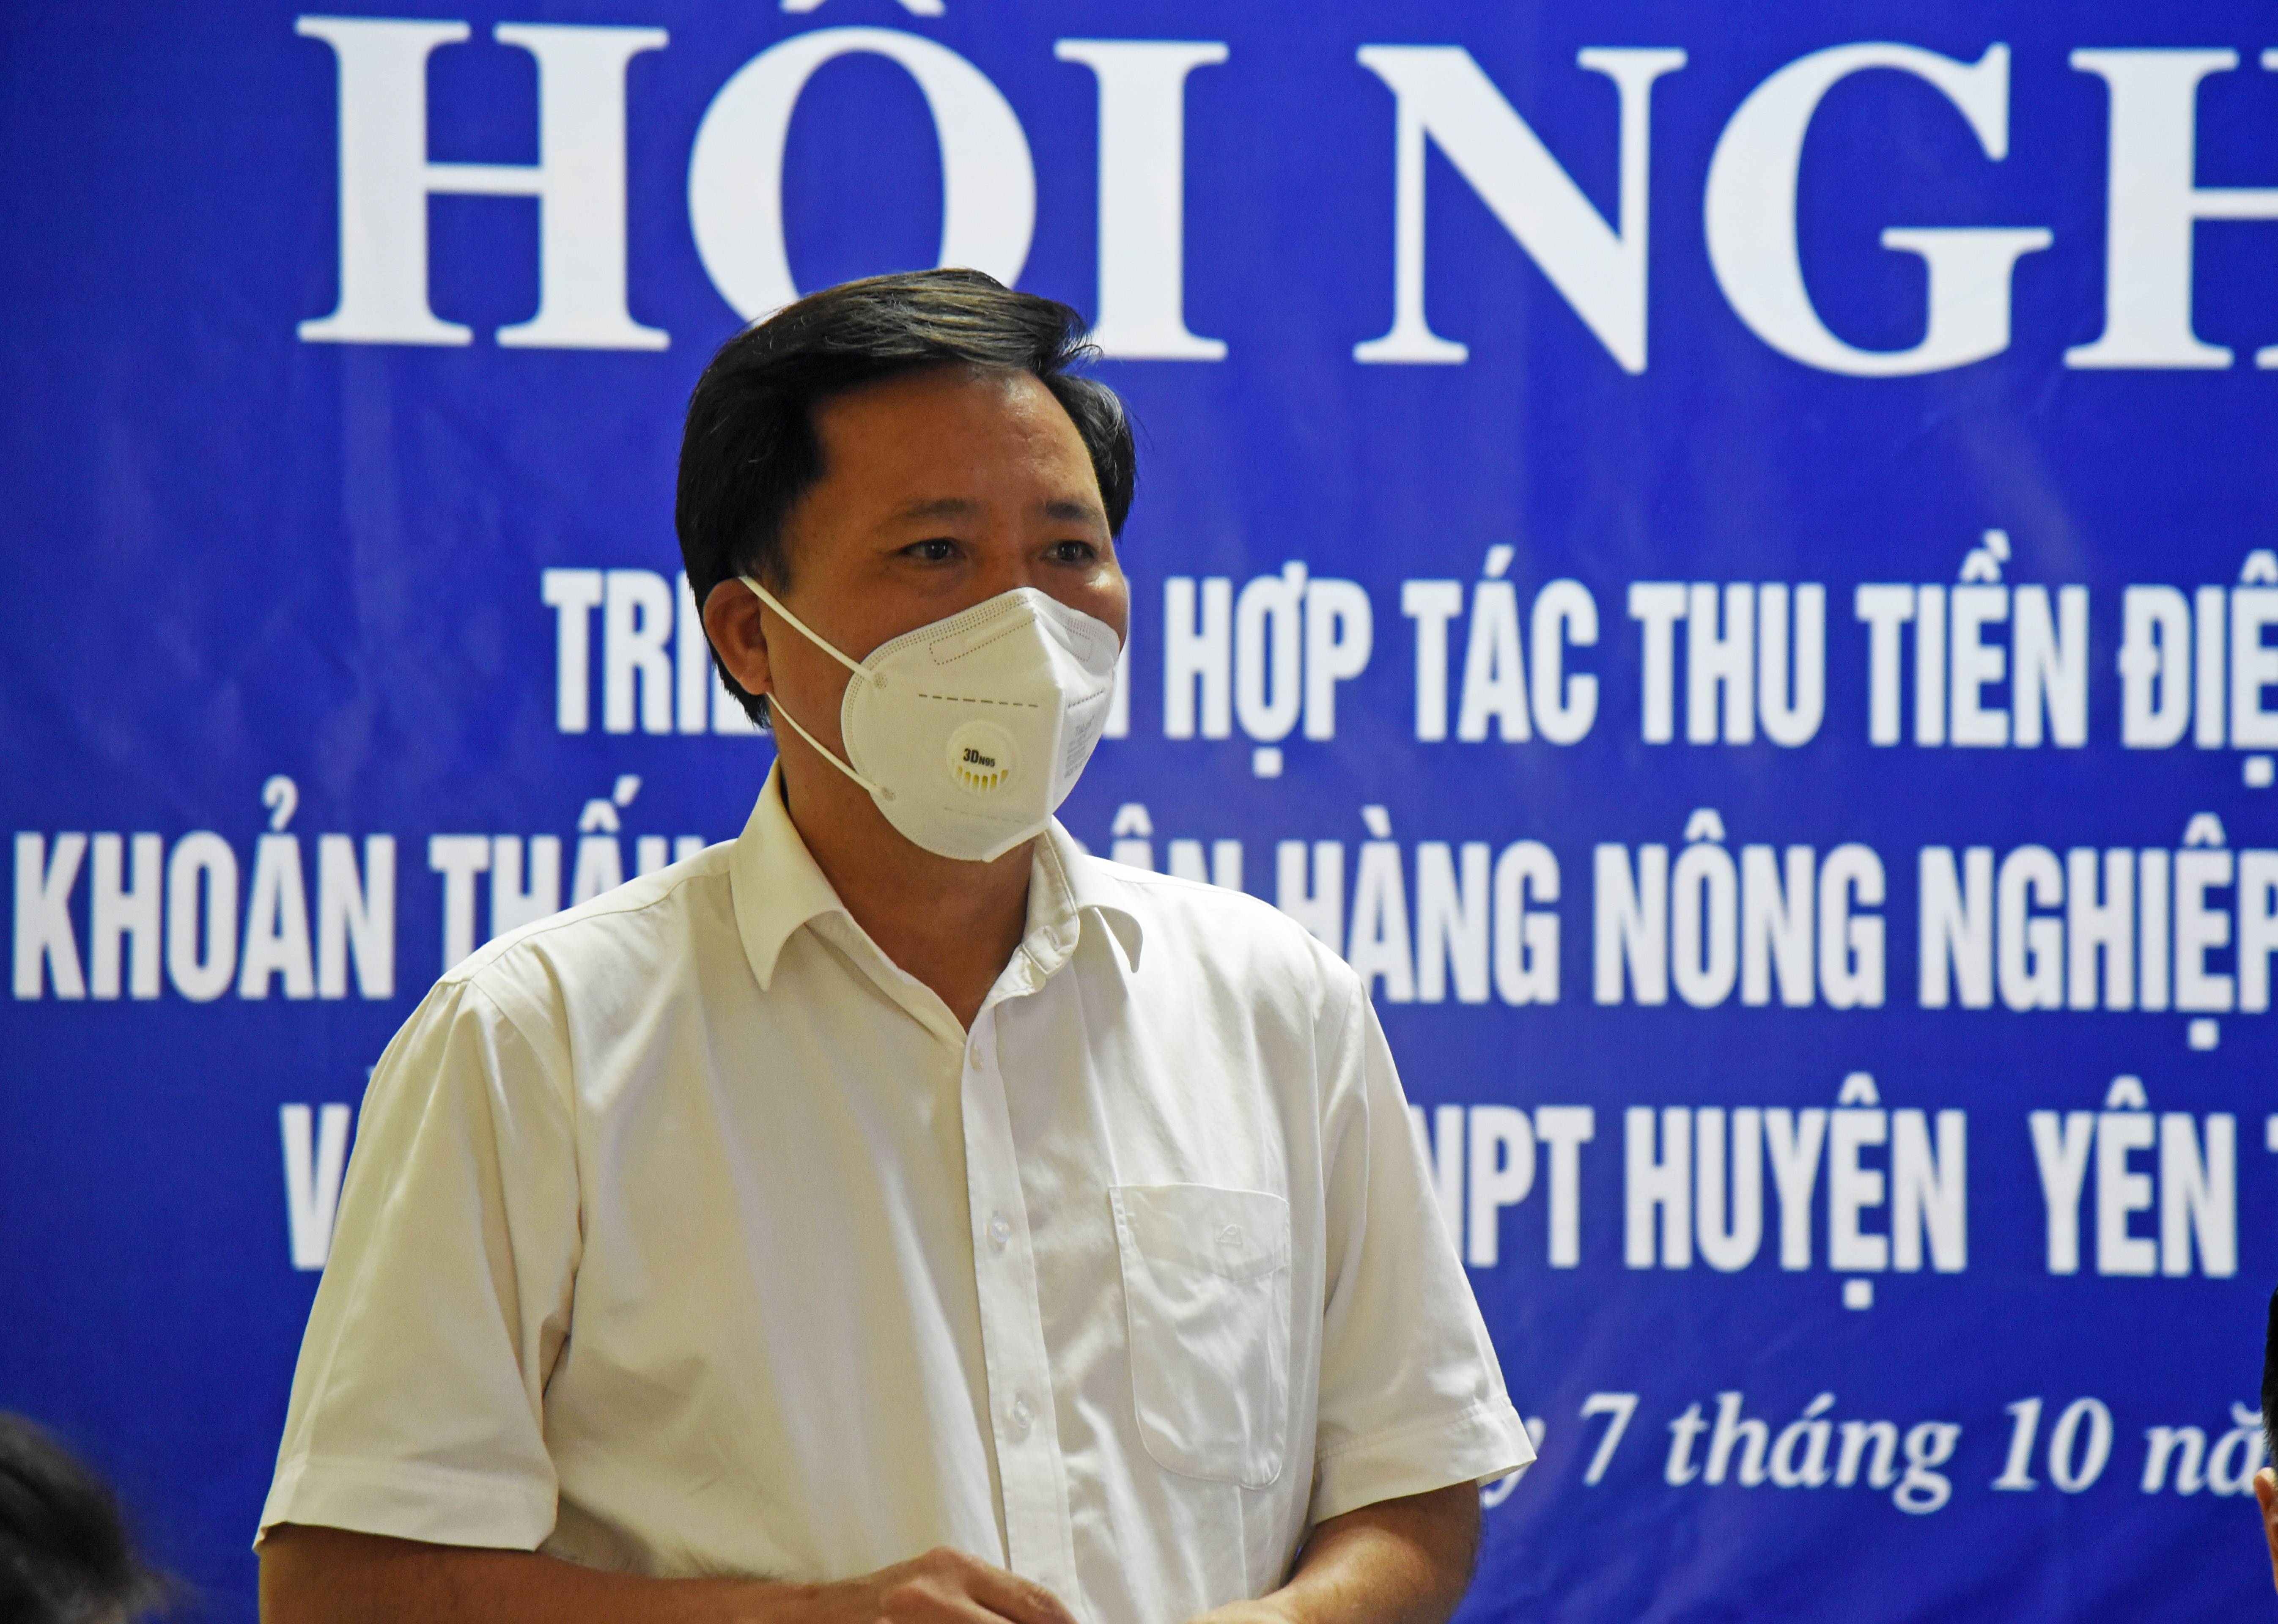 Ông Nguyễn Xuân Lợi - Phó Giám đốc Điện lực Nghệ An cho biết đơn vị đang đẩy mạnh thanh toán tiền điện không sử dụng tiền mặt. Ảnh: TG